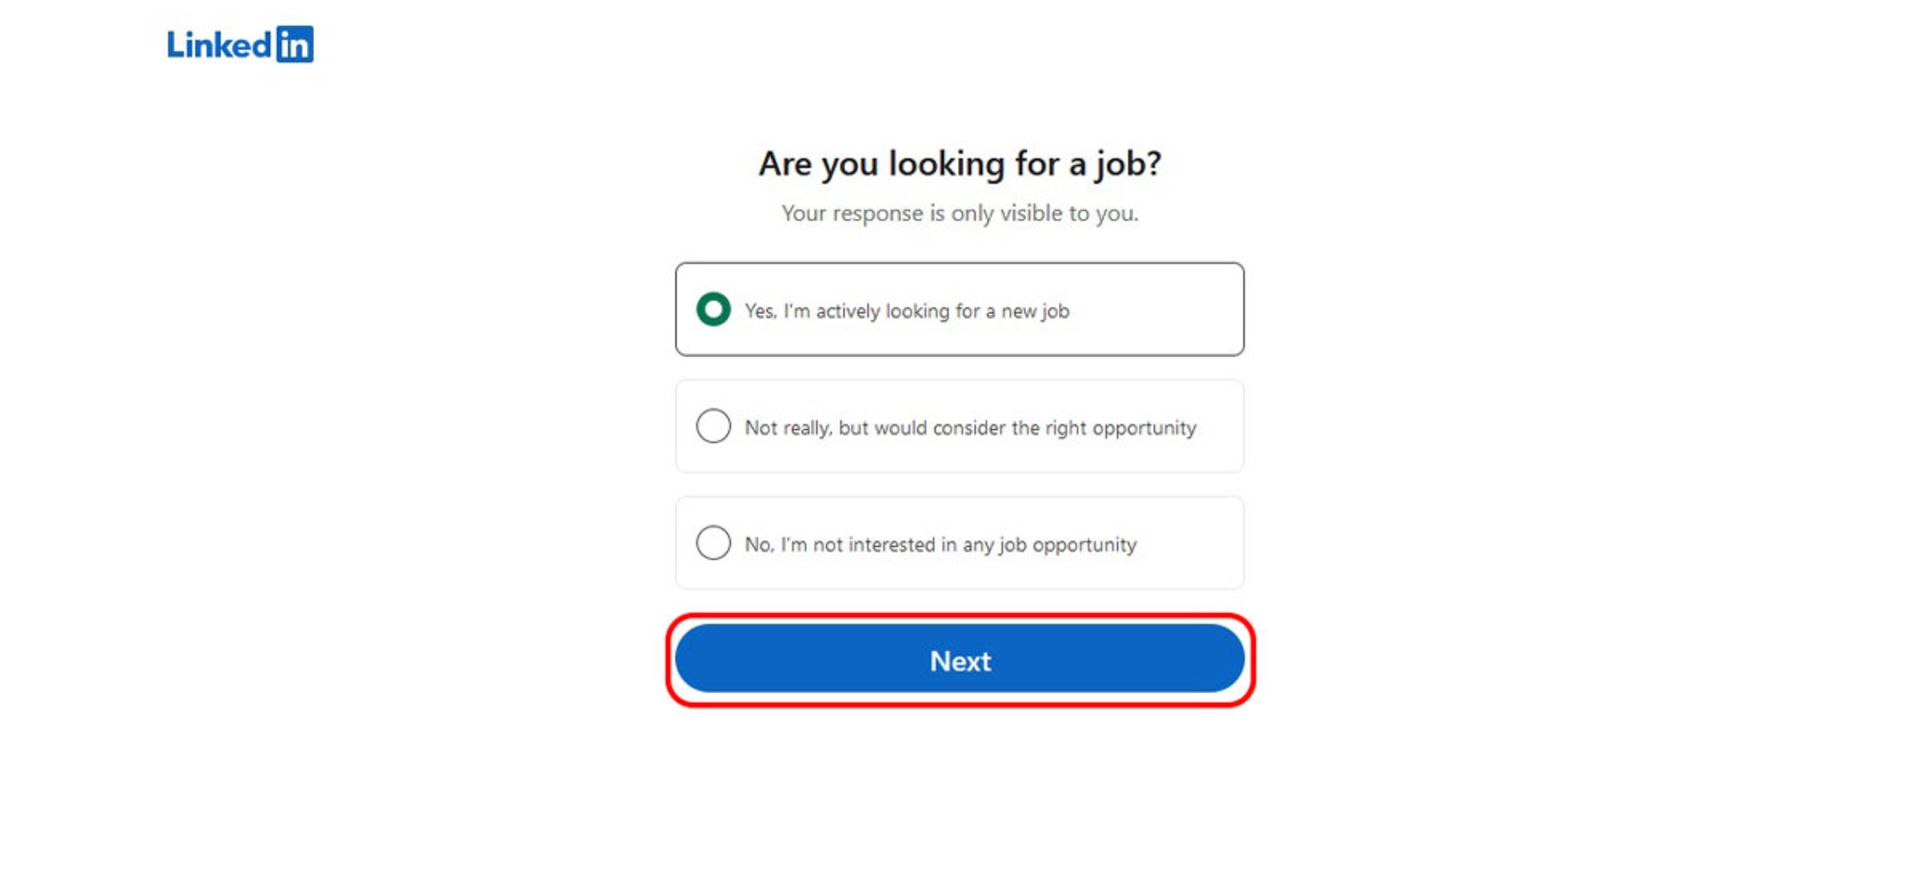 گزینه هایی برای پیدا کردن شغل یا علاقه نداشتن به شغل در لینکدین